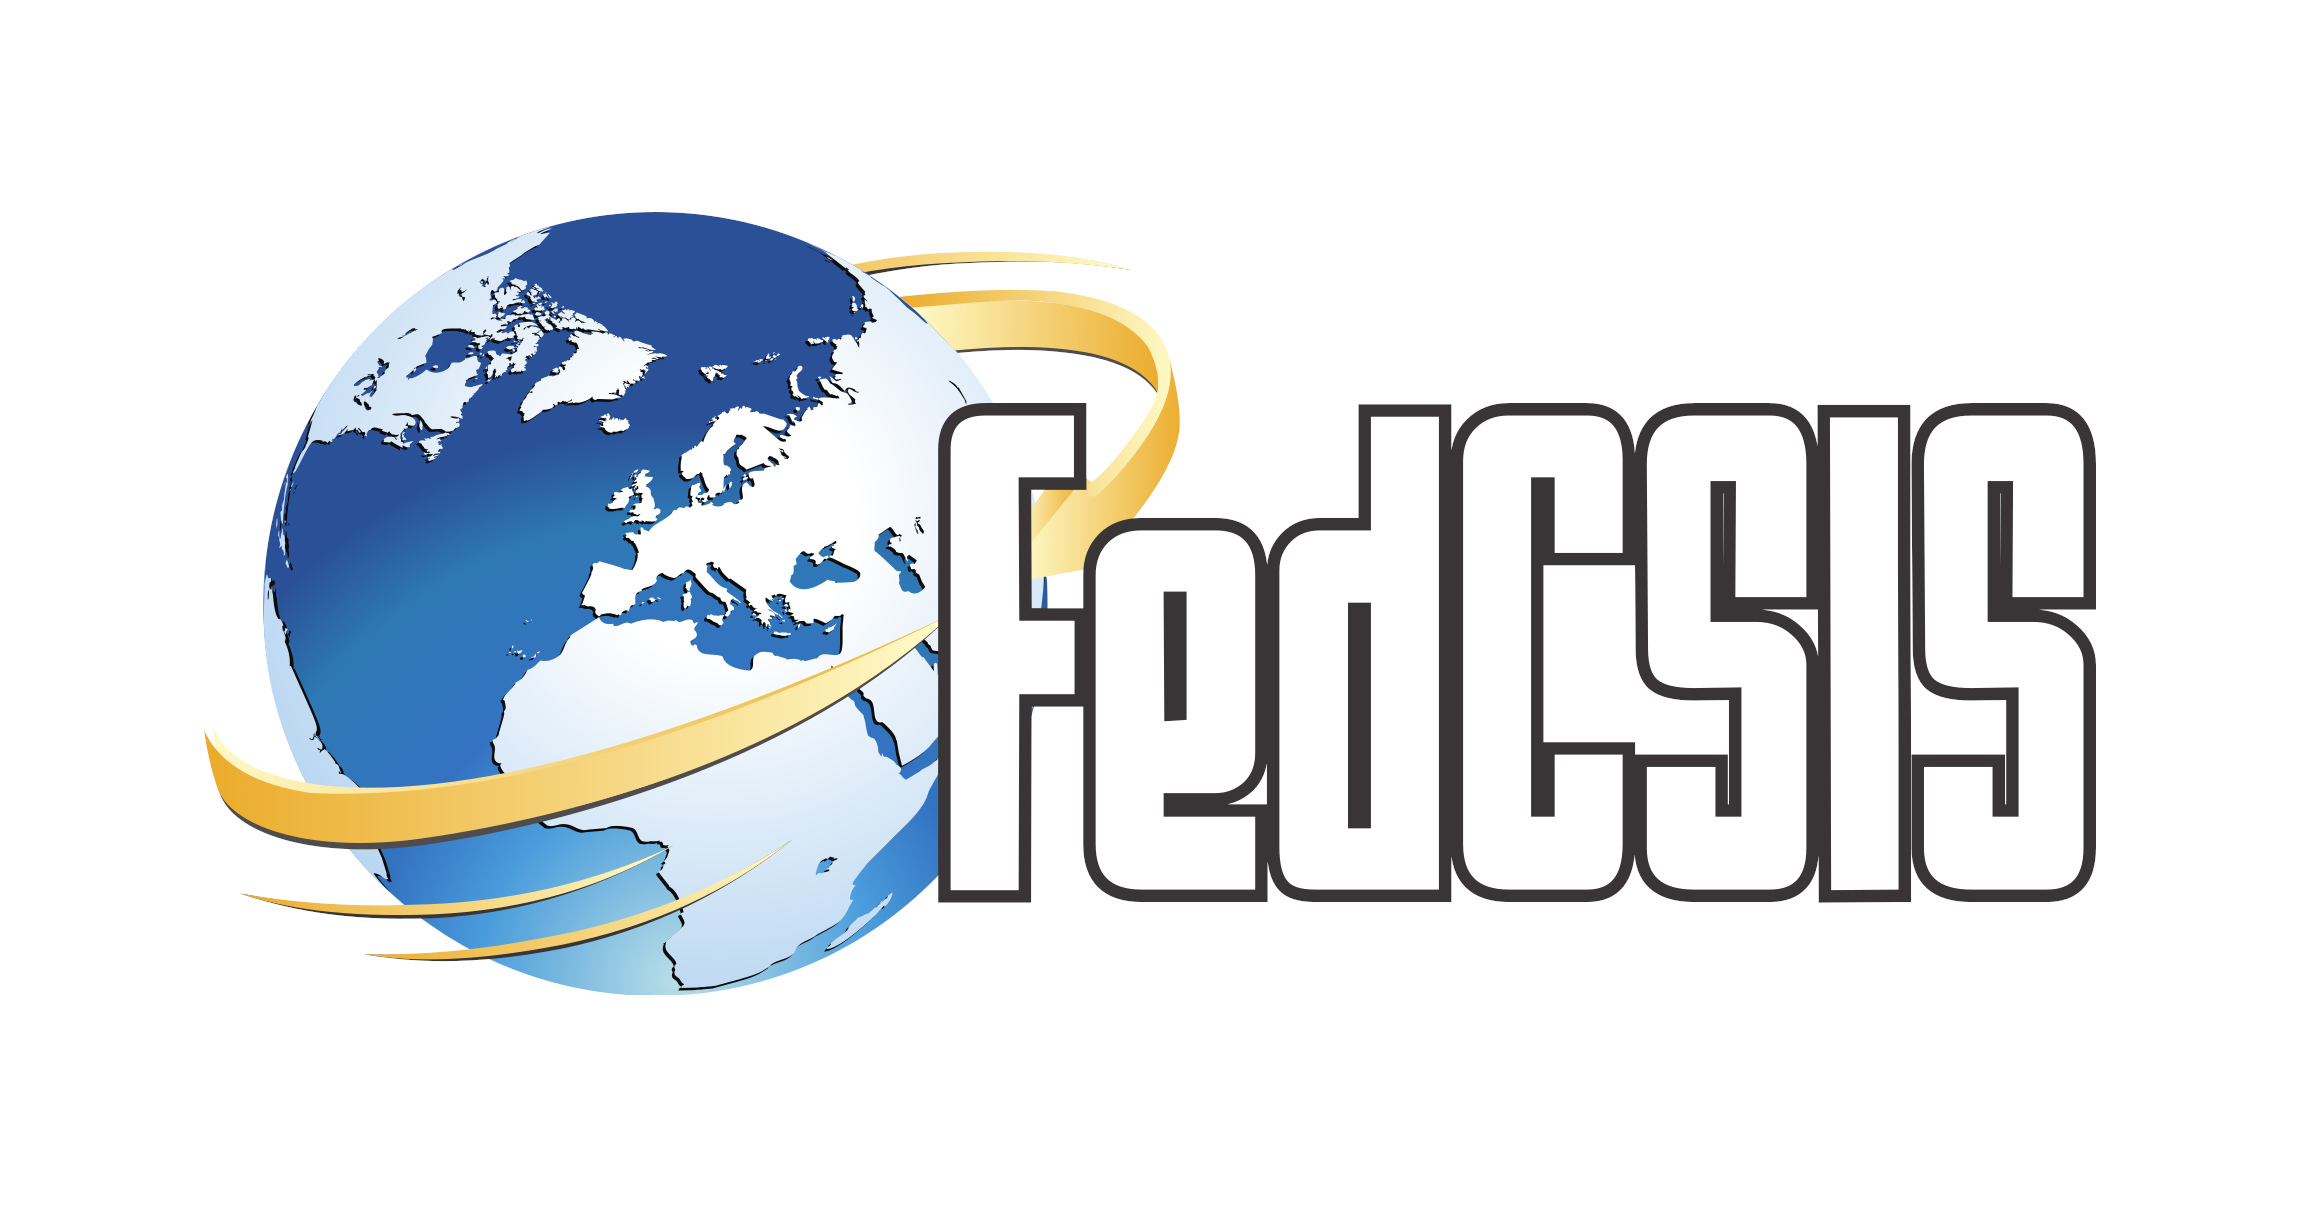 (c) Fedcsis.org